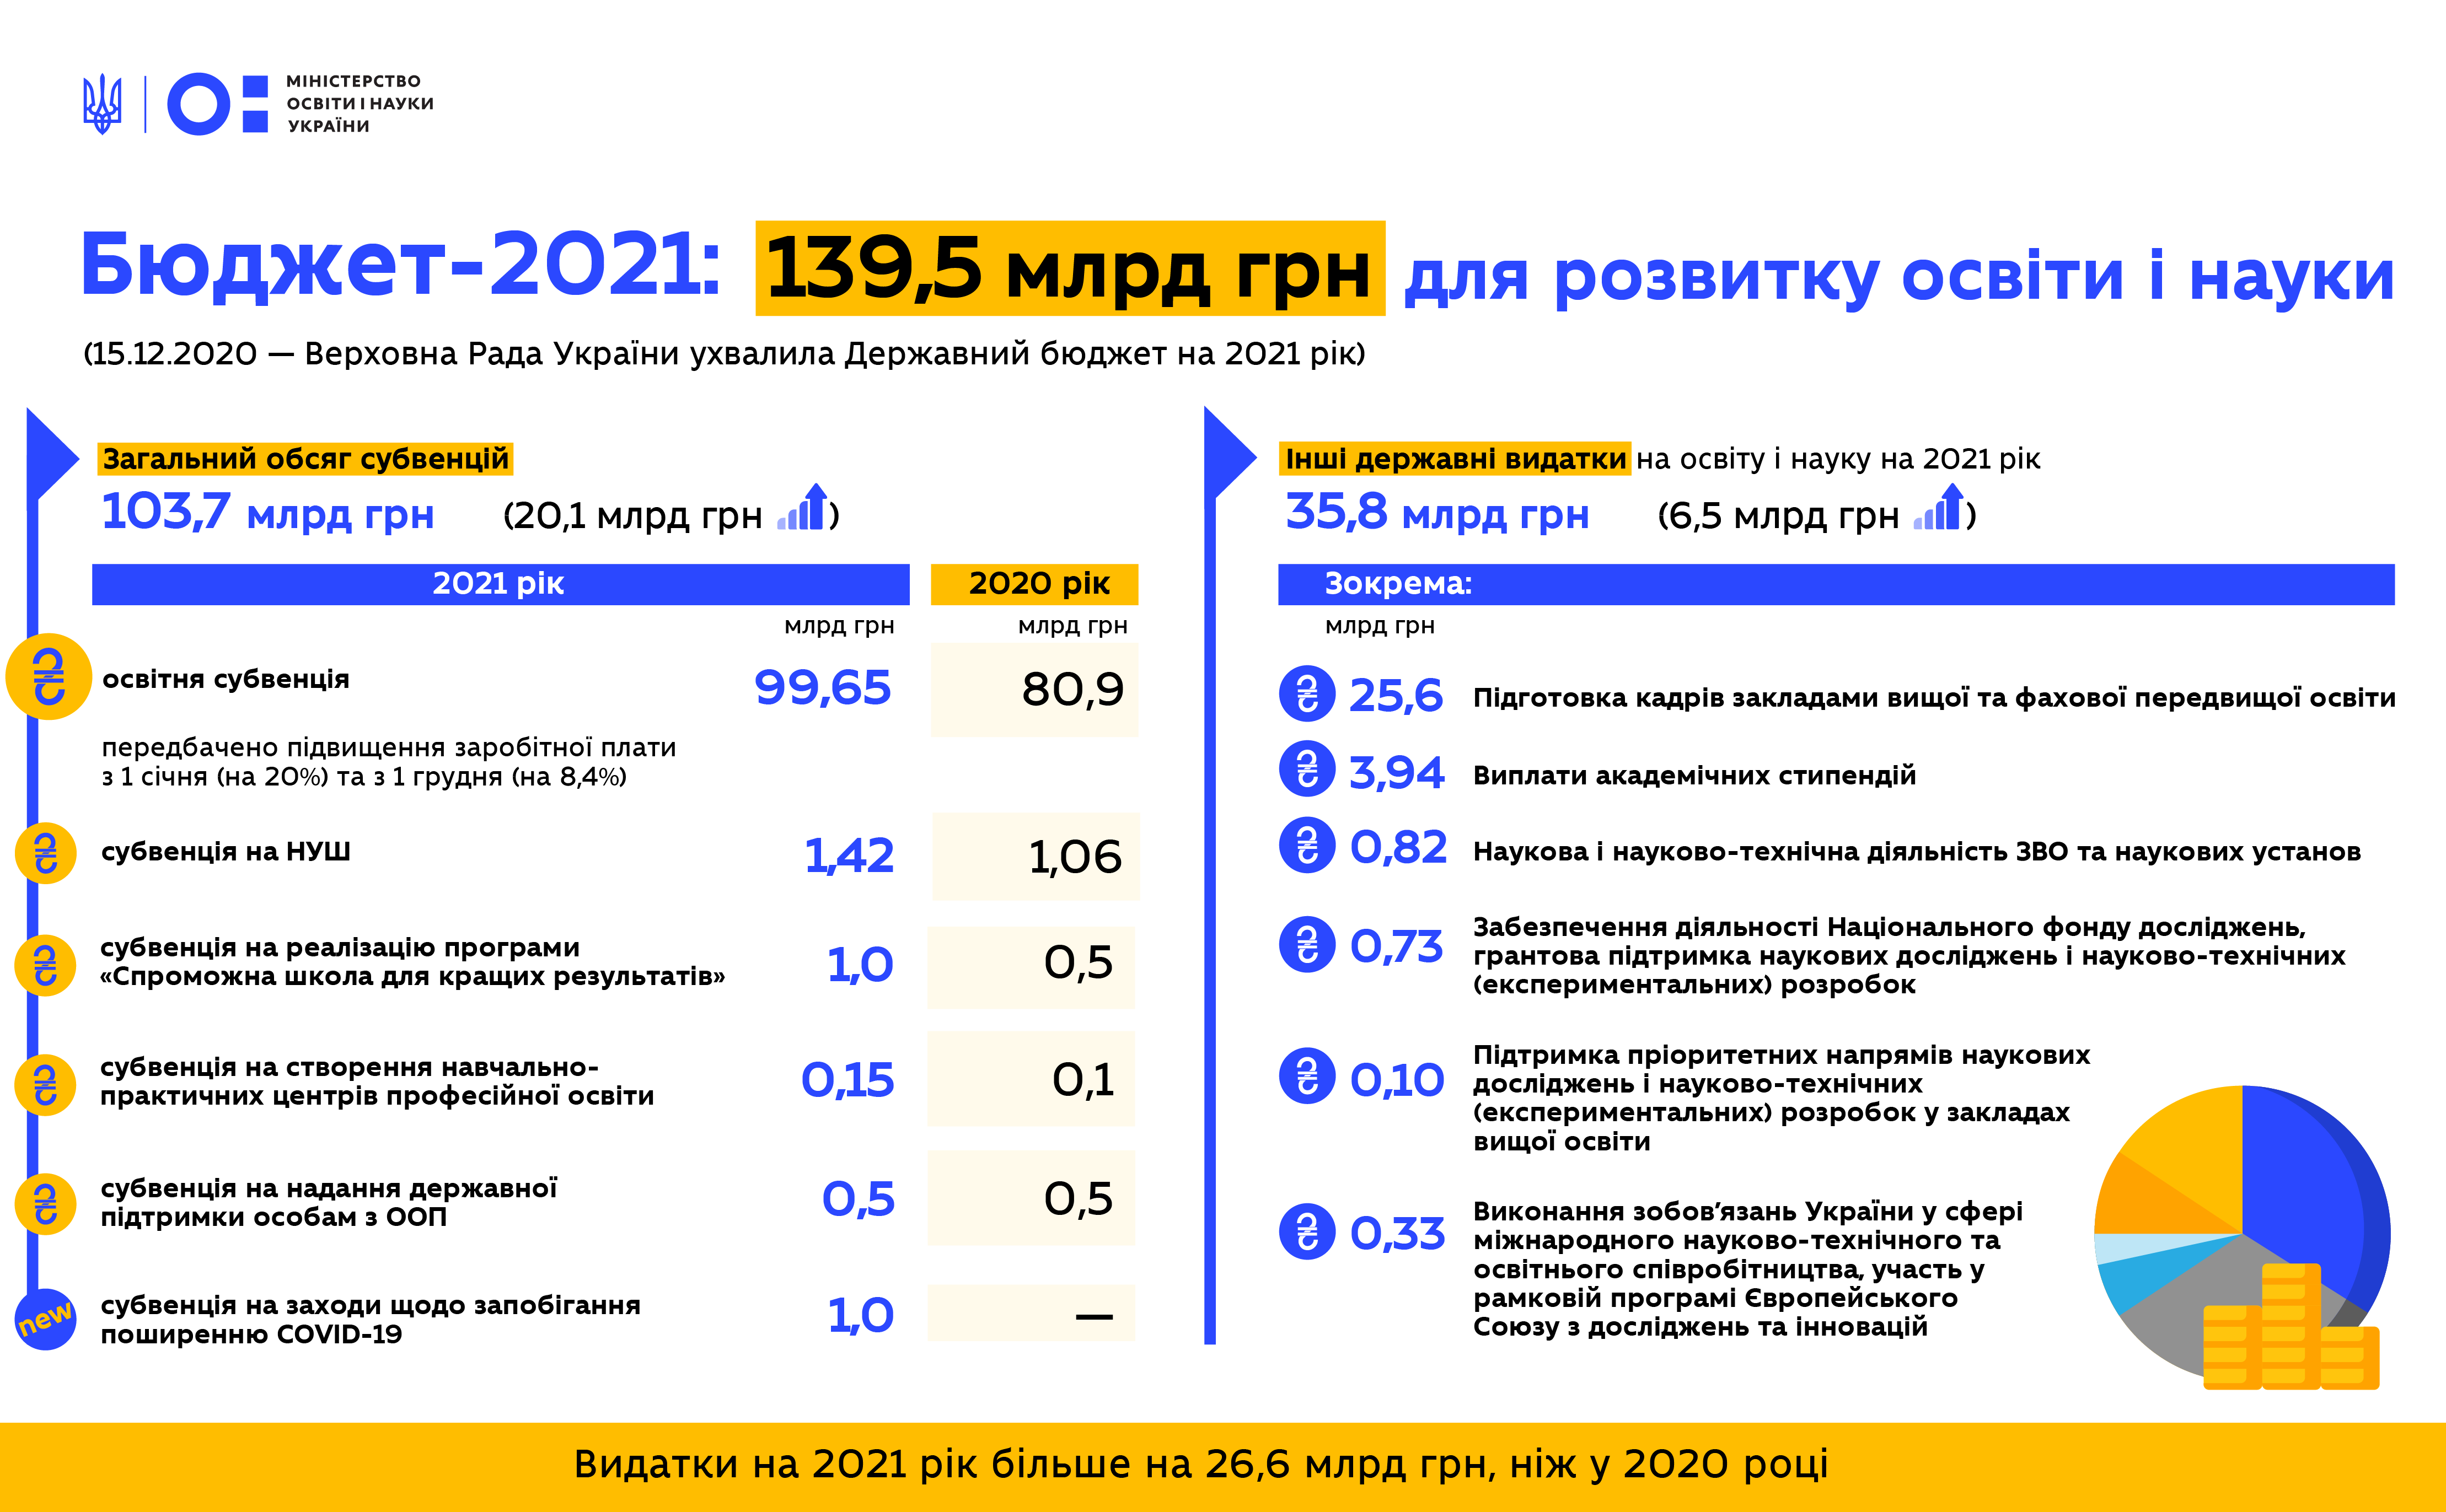 Инфографика МОН Украины